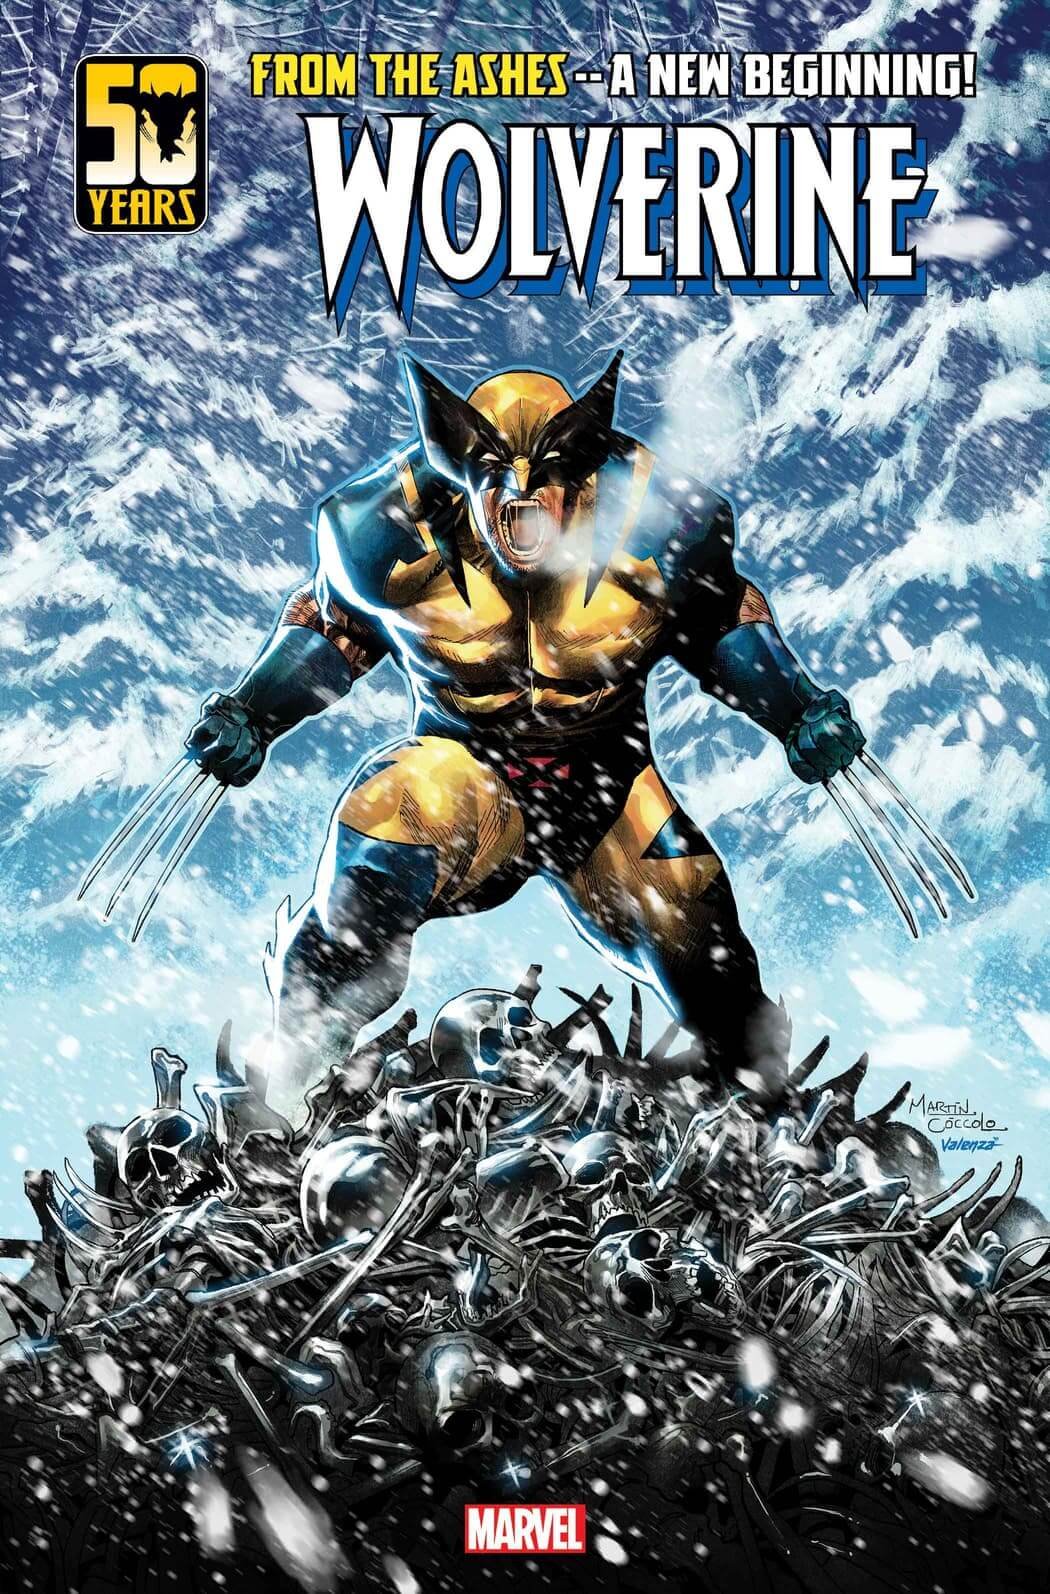 Cover di Wolverine 1 di Martin Coccolo